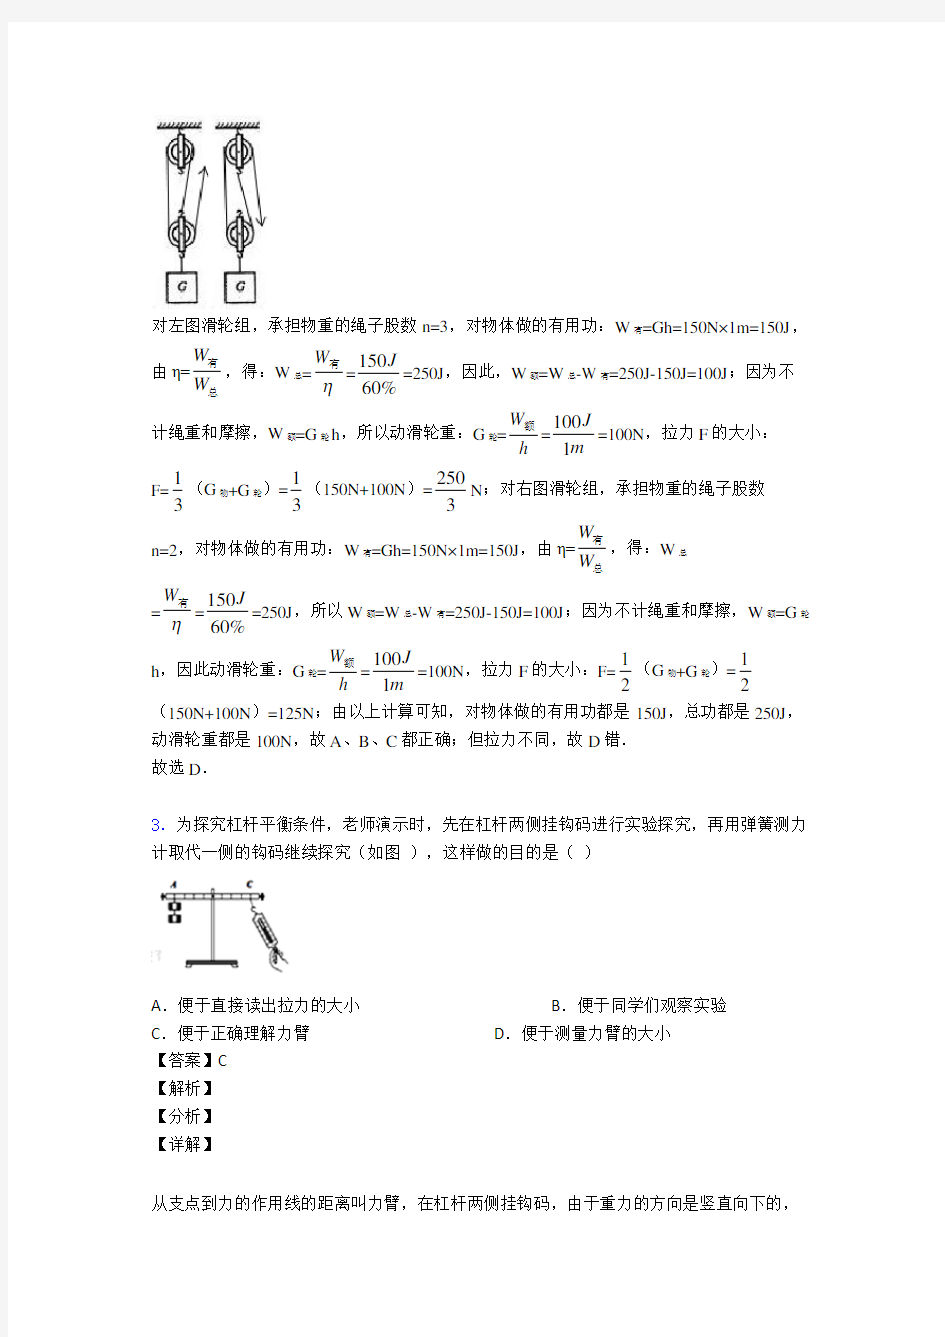 【物理】初三物理简单机械专题训练答案